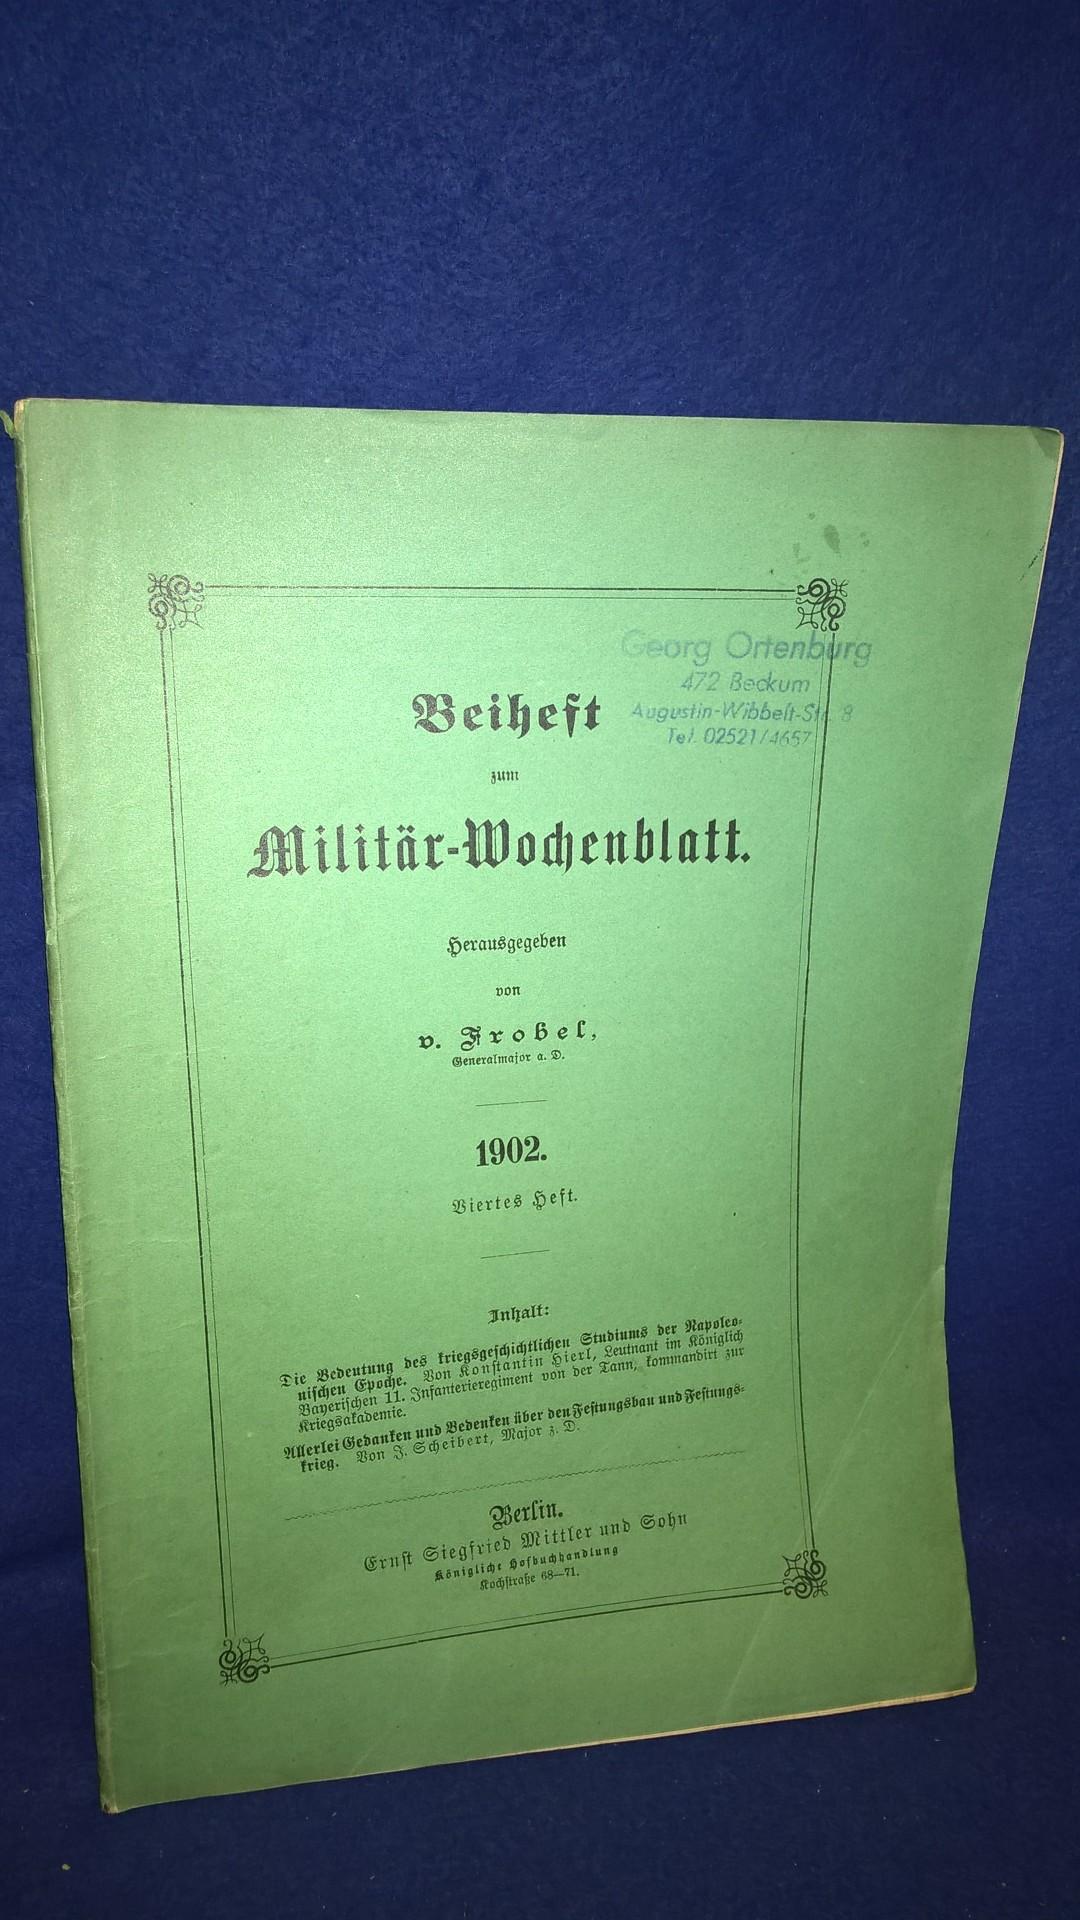 Beiheft zum Militär-Wochenblatt, 4.Heft, 1902. Aus dem Inhalt: Festungsbau und Festungskrieg/Studium der Napoleonischen Epoche.